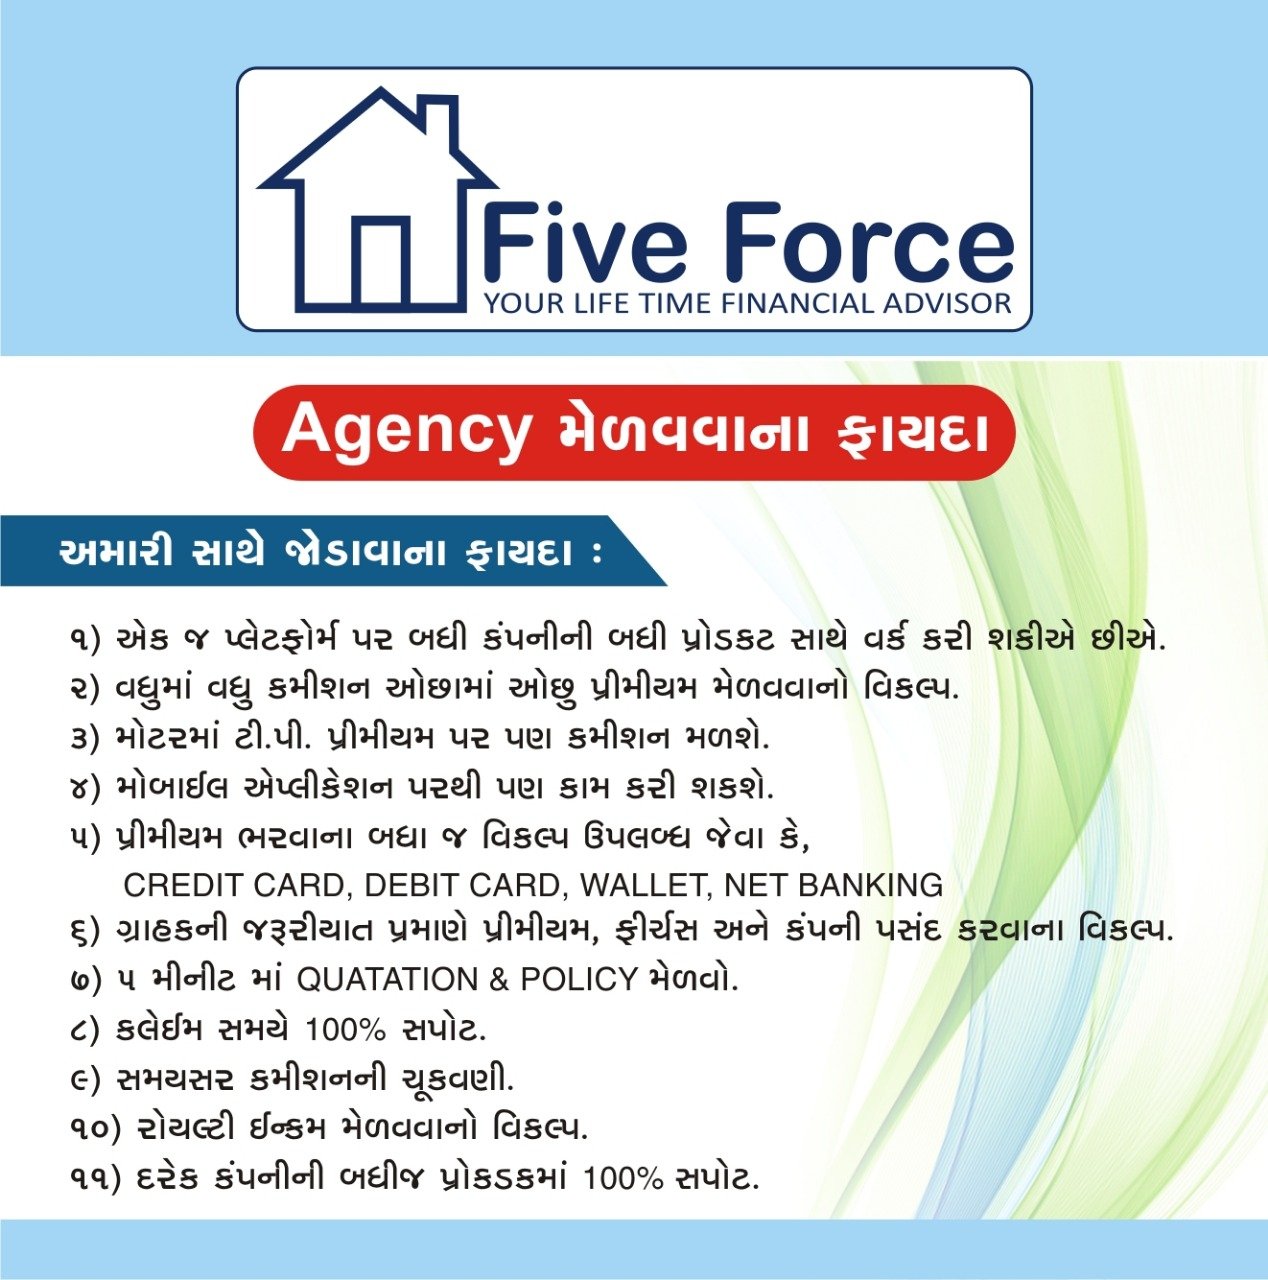 Five Force Advisory Pvt. Ltd